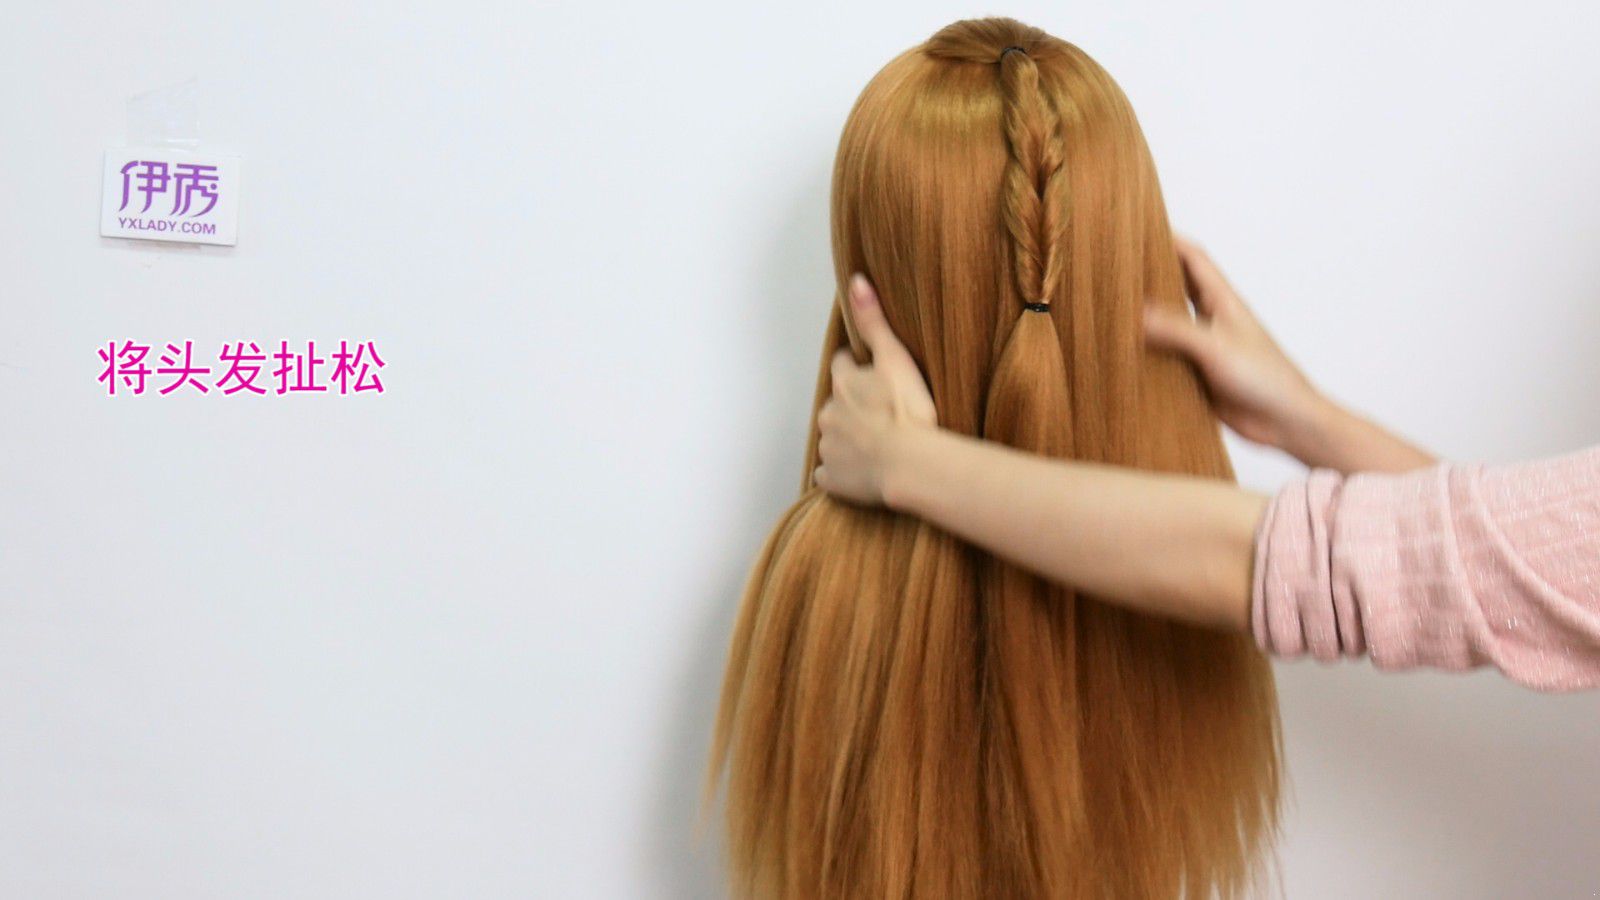 【韩式发型】3款女神感发型教程 简单绑法步骤轻松让美貌气质升级